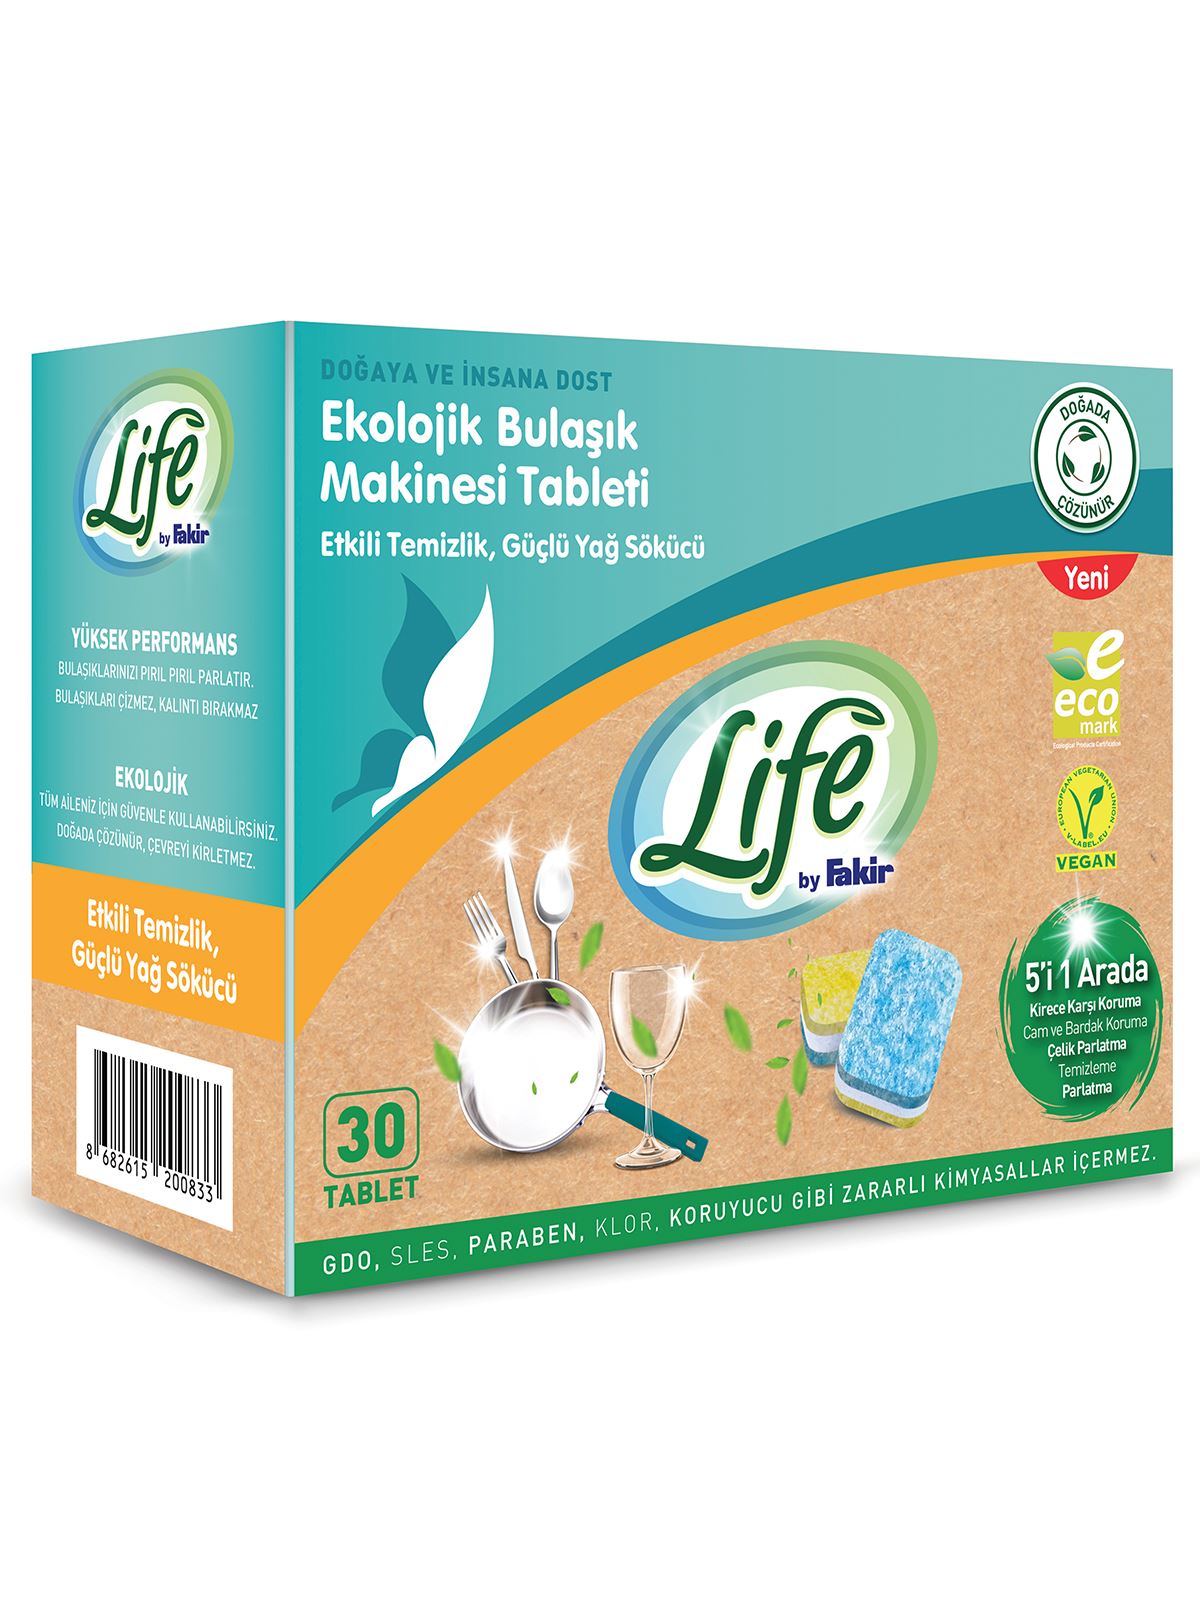 Life by Fakir Ekolojik Vegan Bulaşık Makinesi Tableti 30 Adet